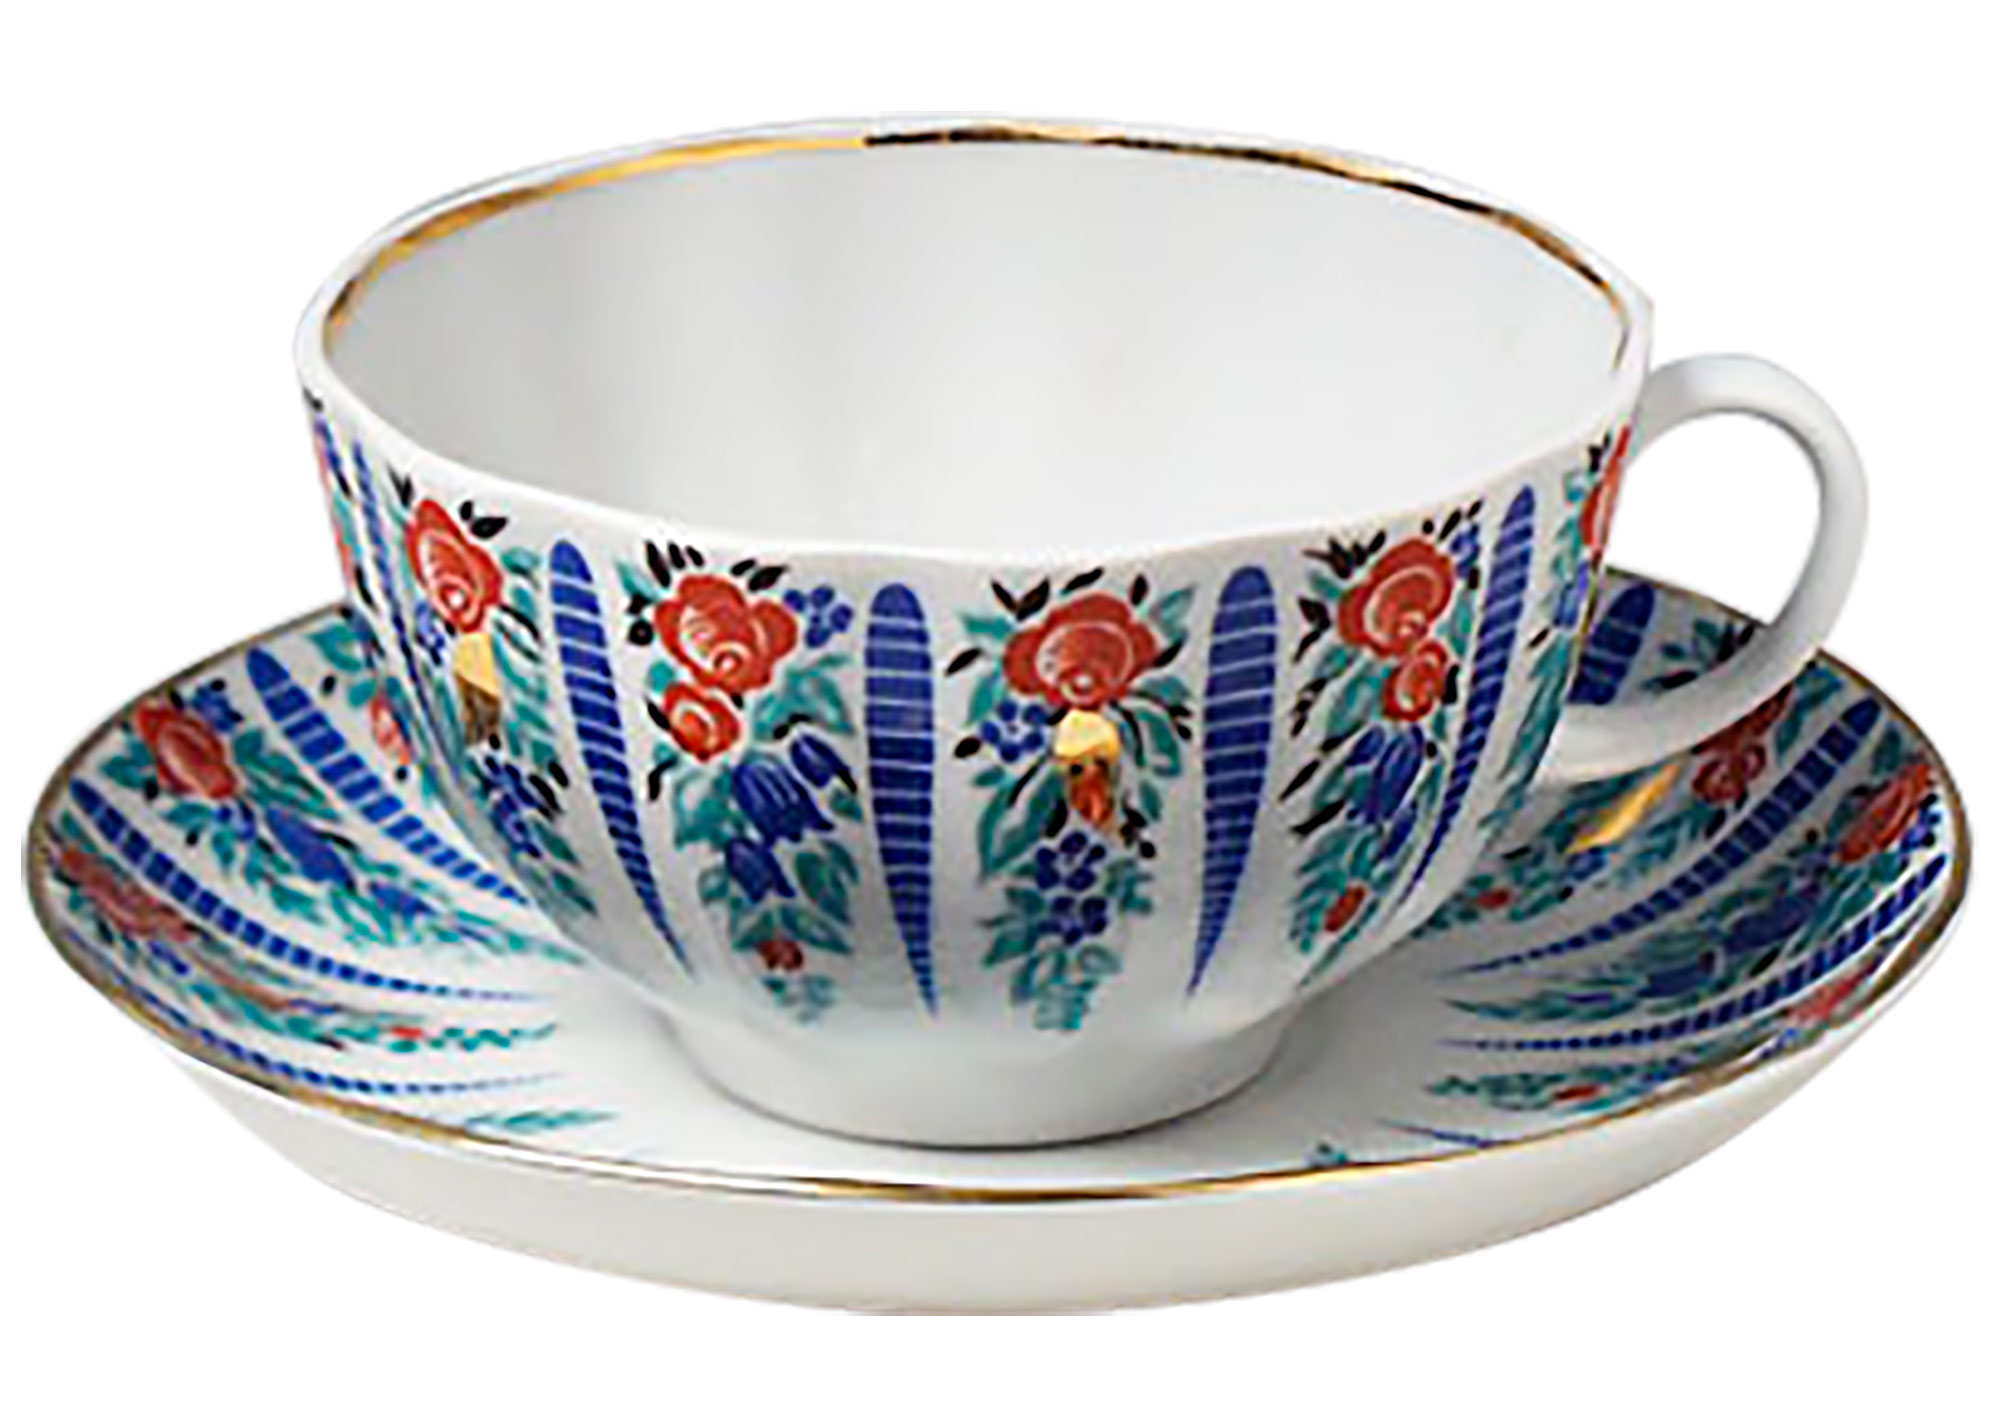 Buy Sarafan Tea Cup and Saucer at GoldenCockerel.com